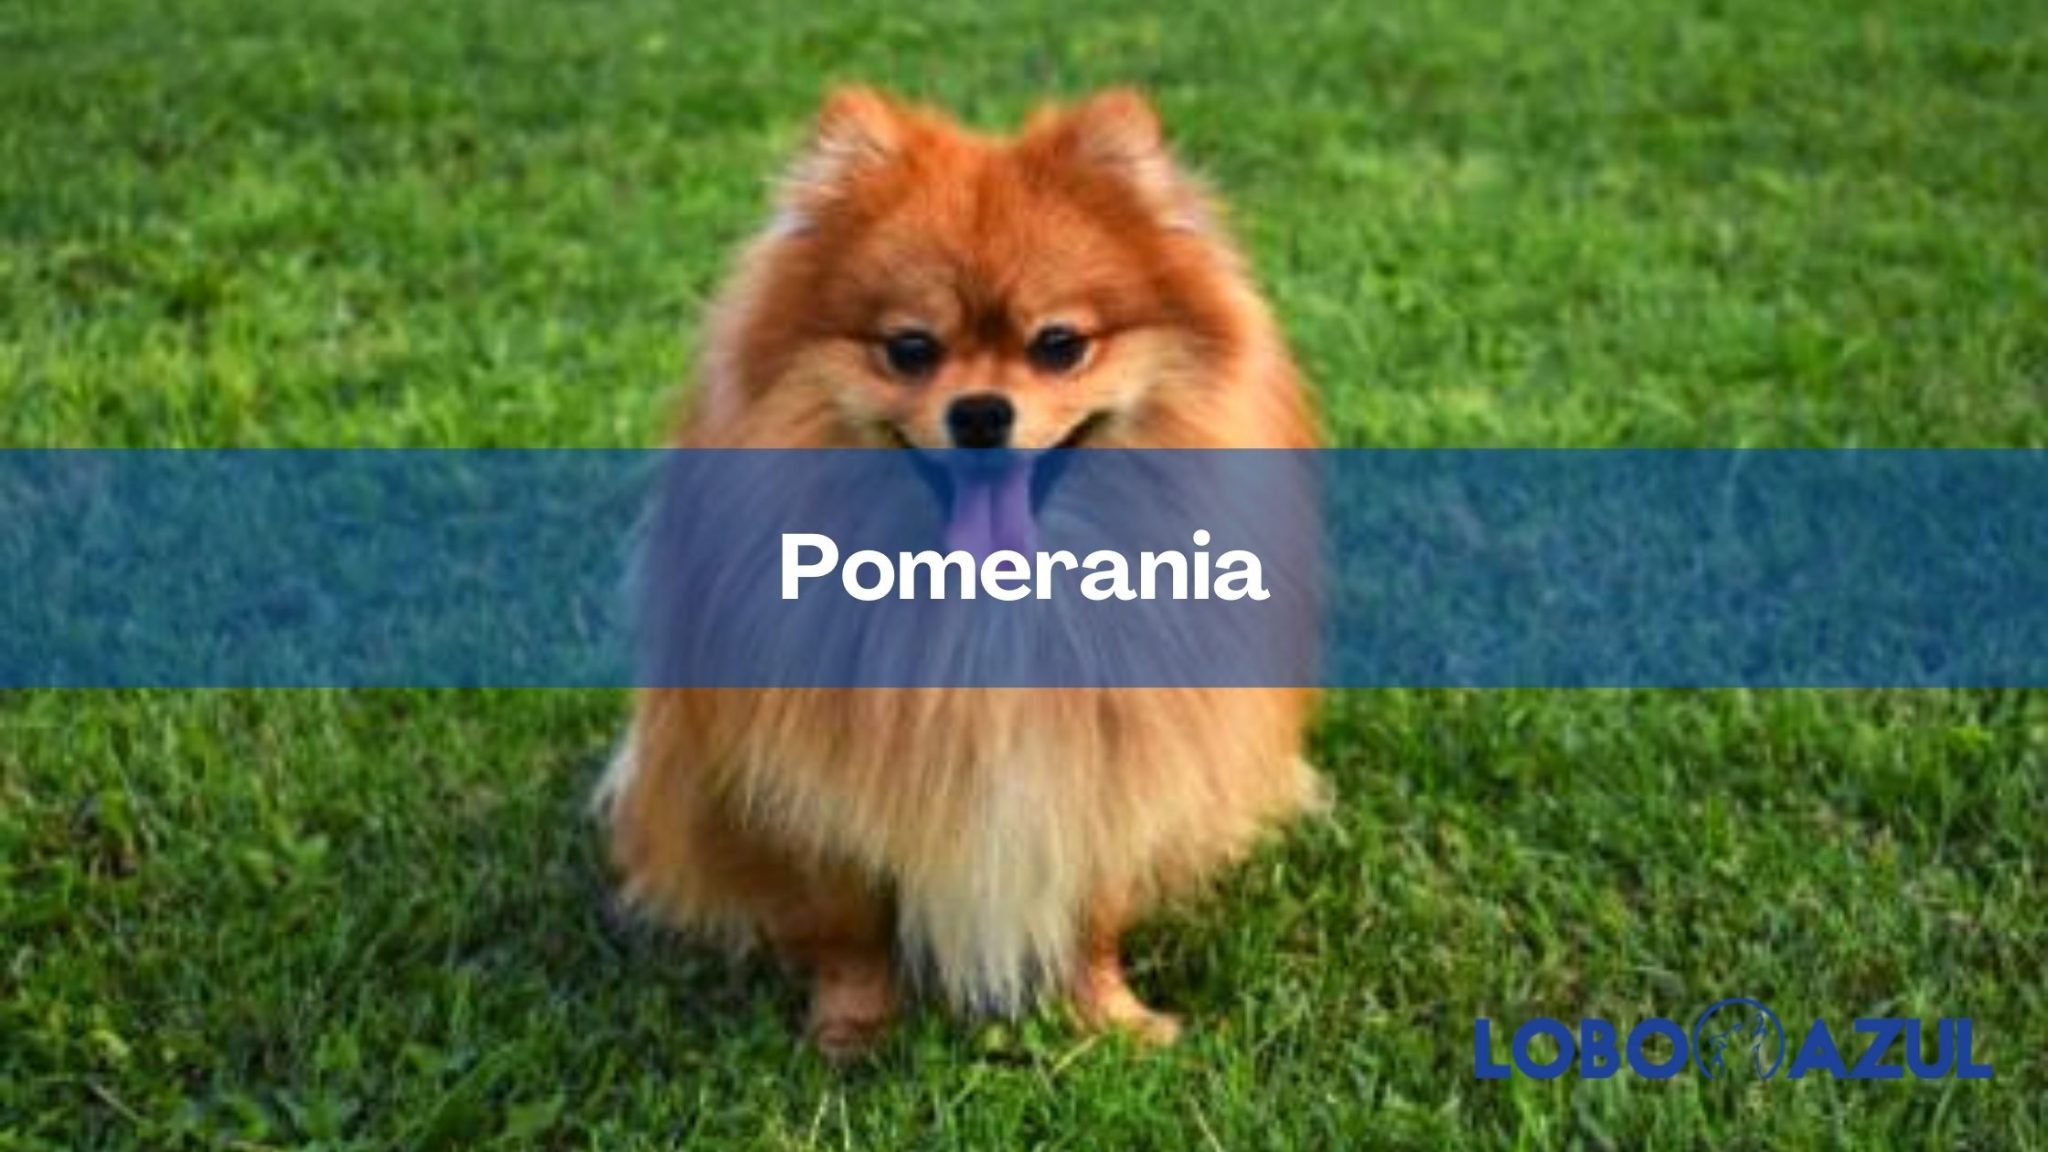 Pomerania | Historia, características y cuidados